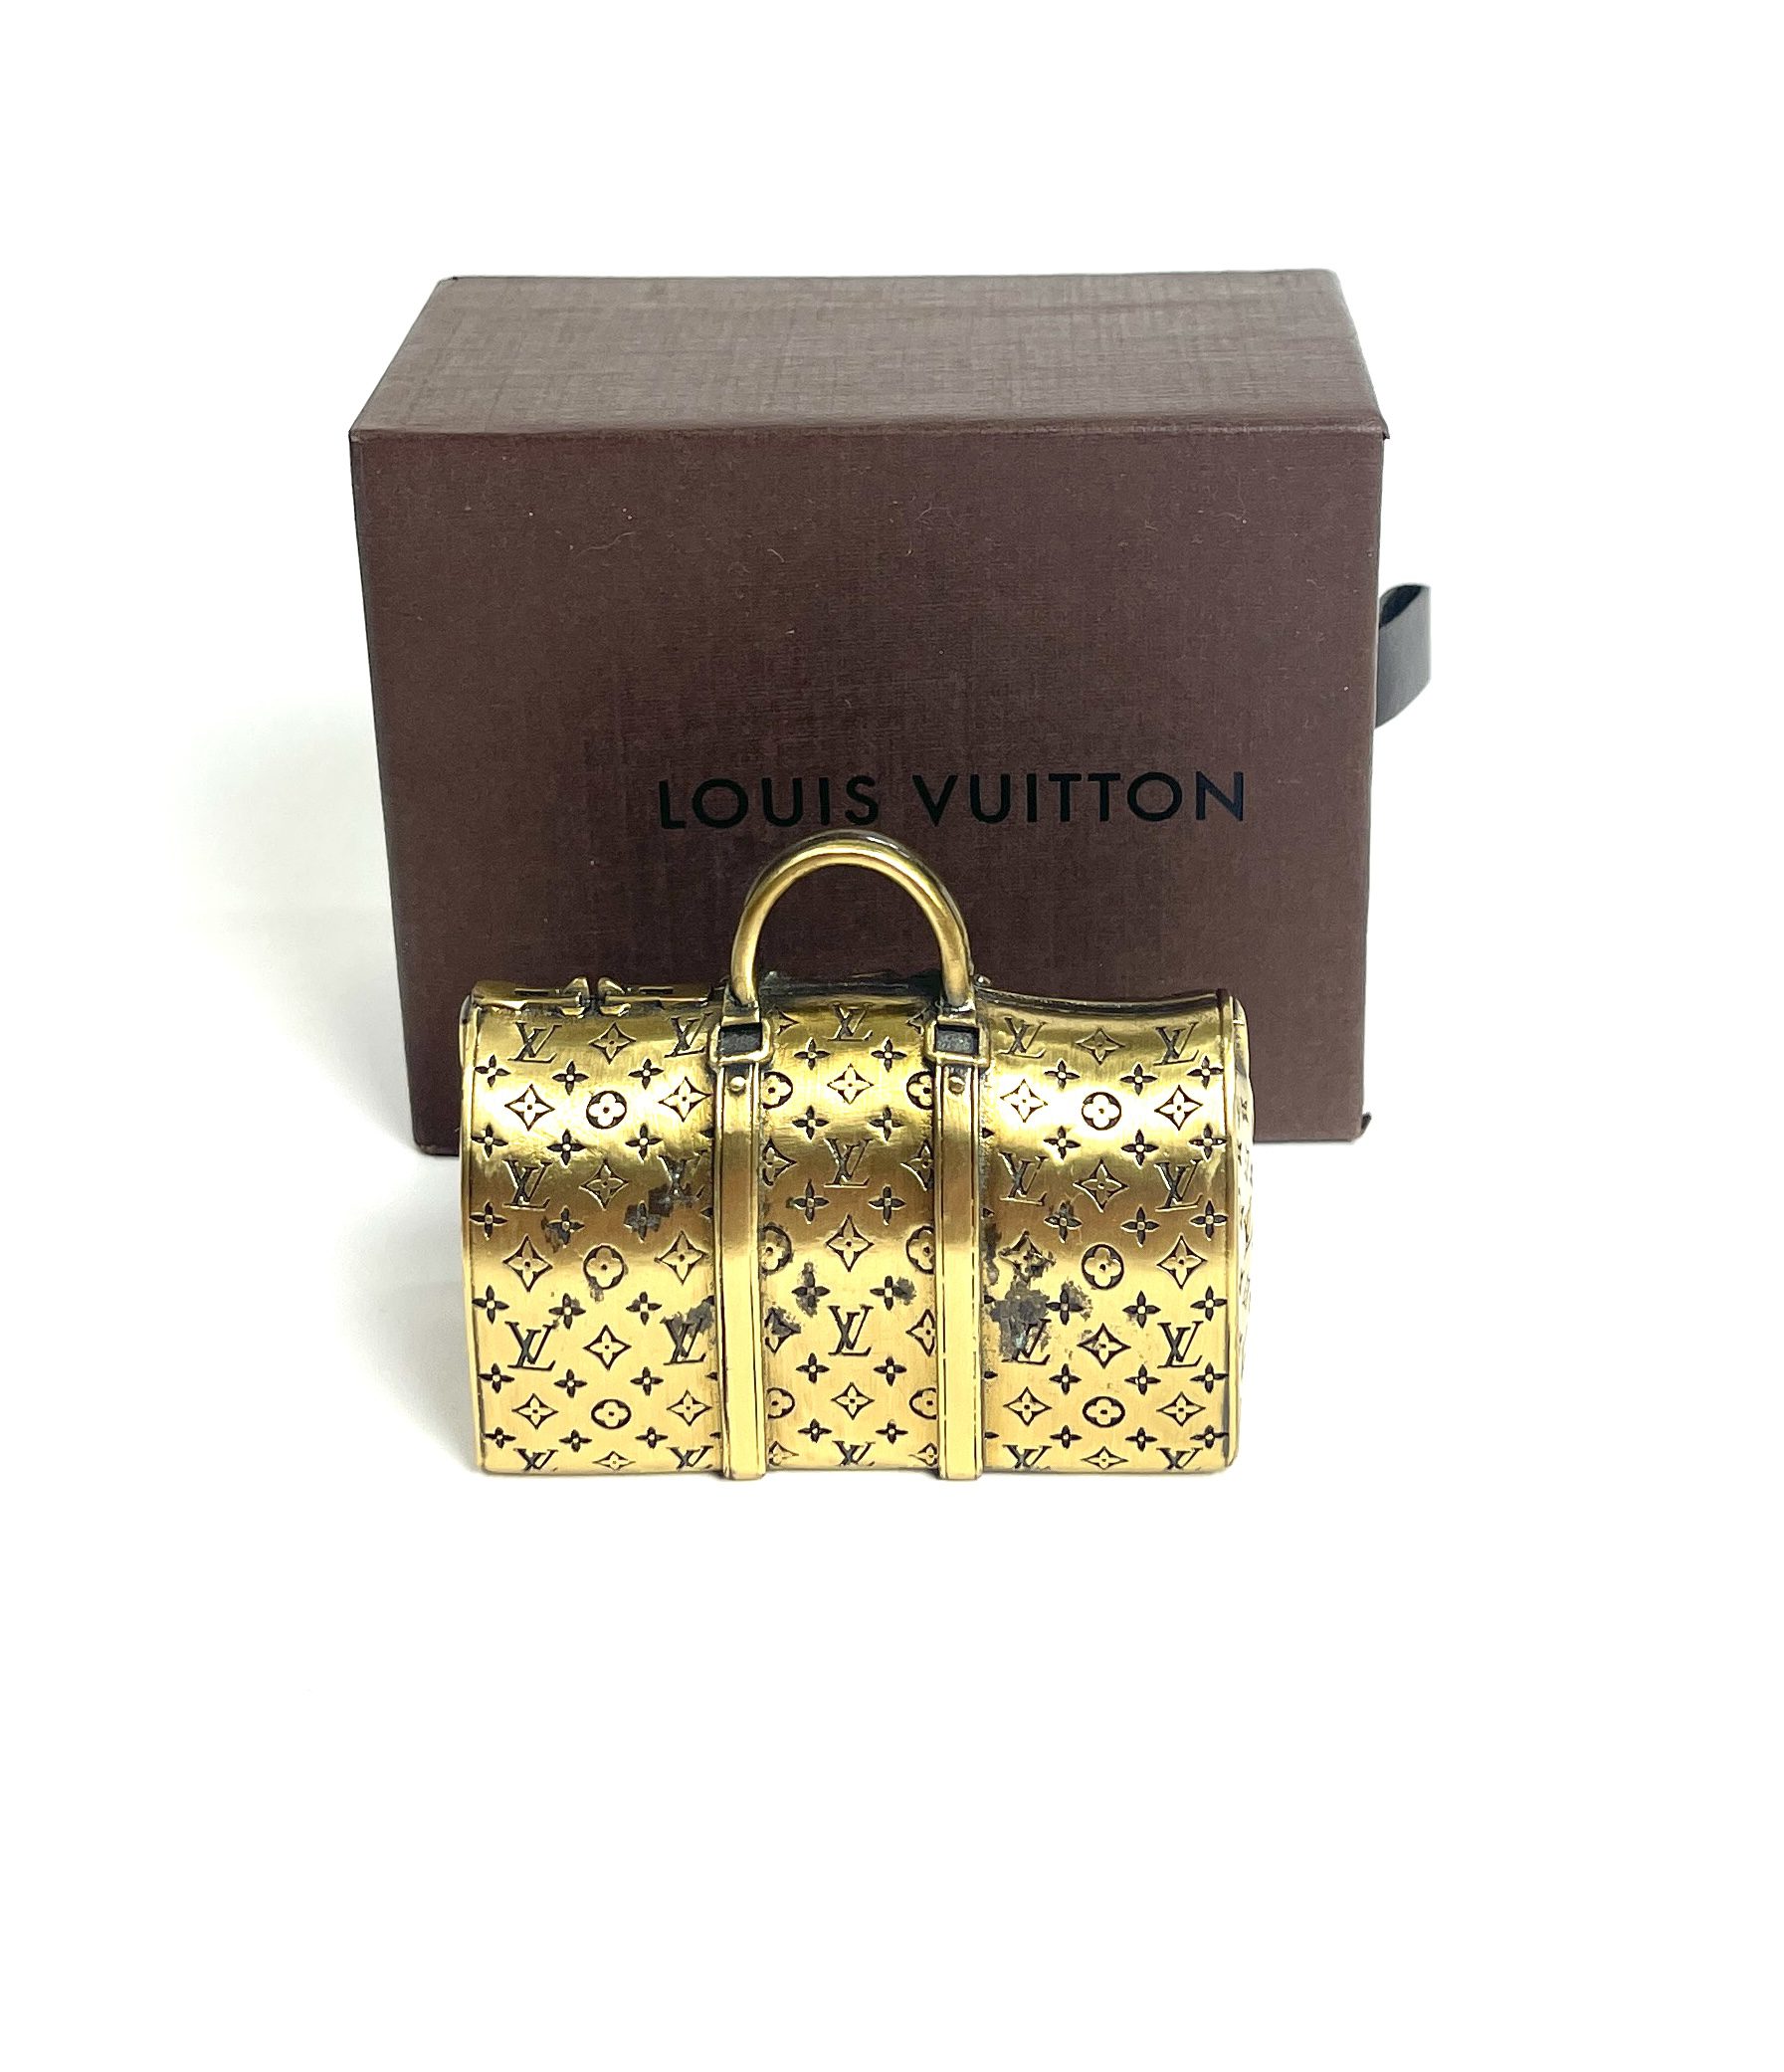 Sold at Auction: Louis Vuitton, LOUIS VUITTON, RARE VINTAGE LE